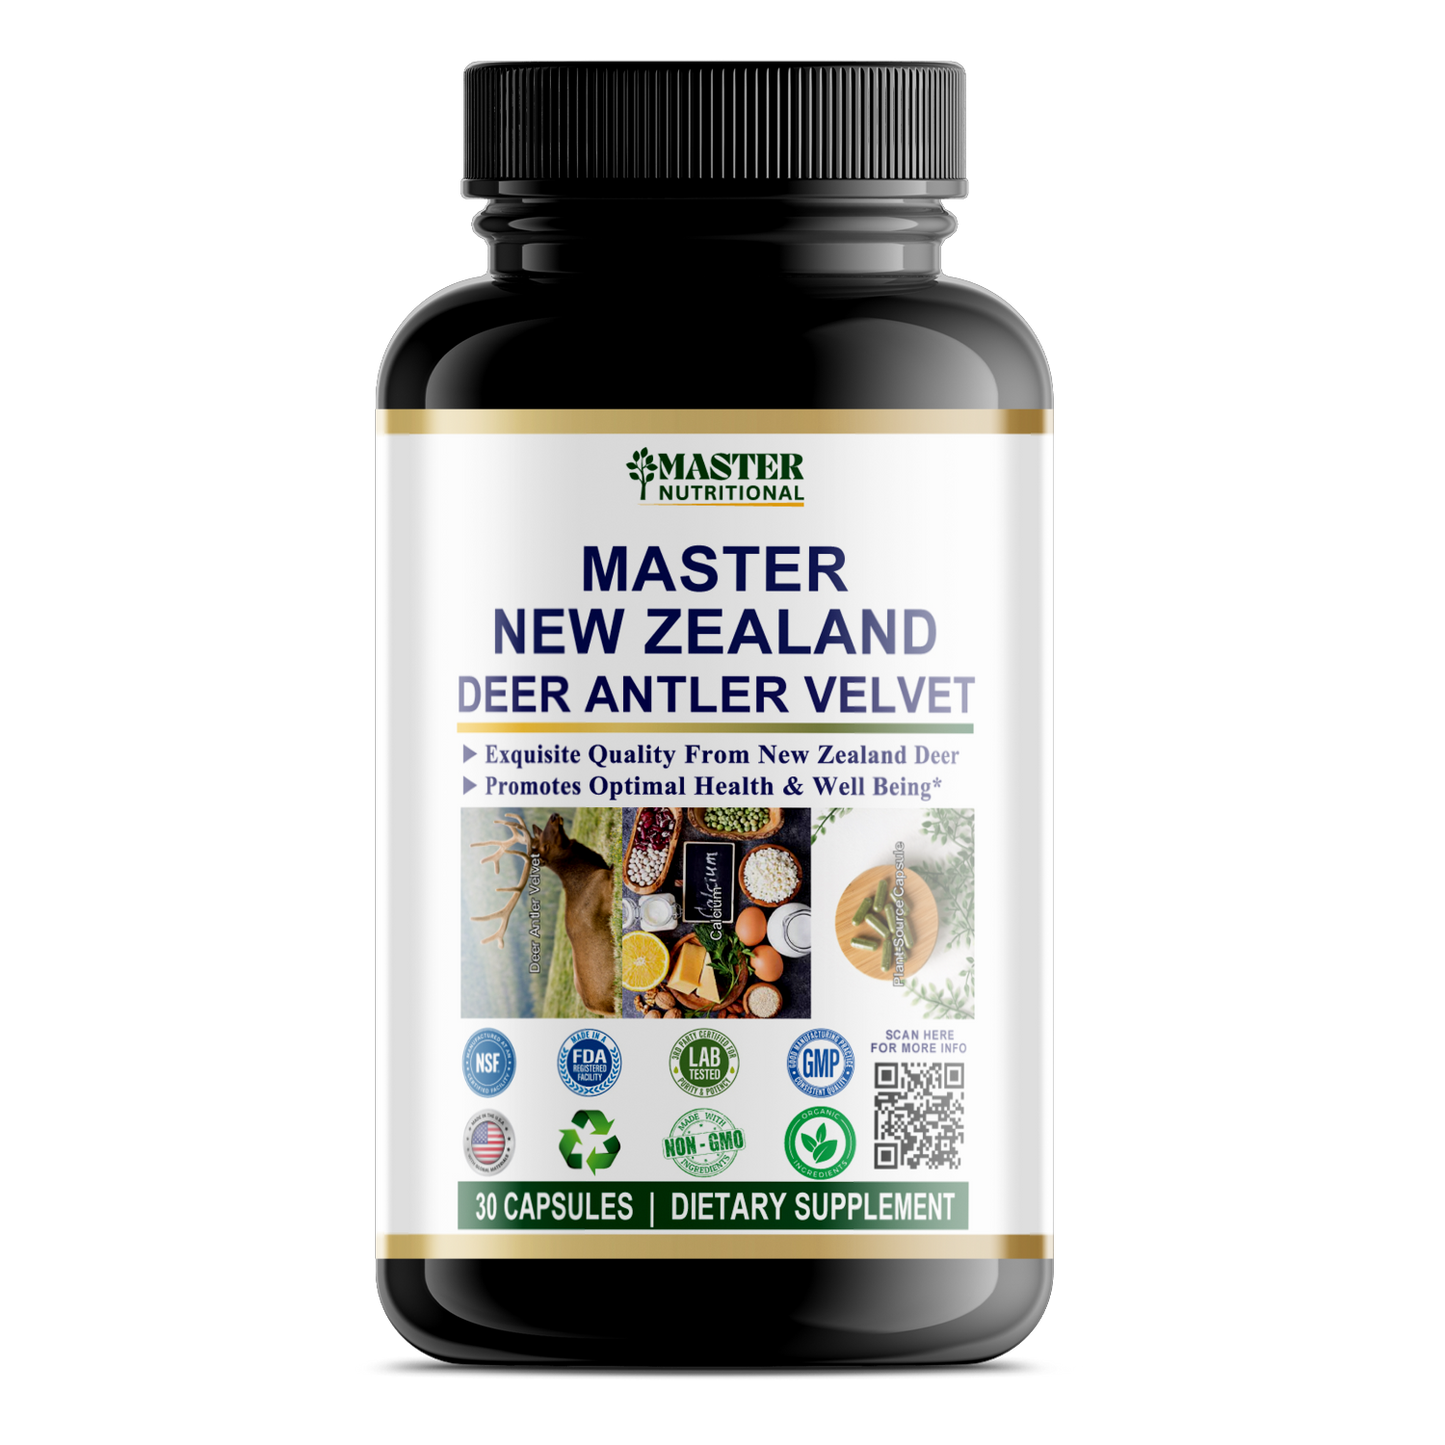 Master New Zealand Deer Antler Velvet for Joint Health, Immunity, and More